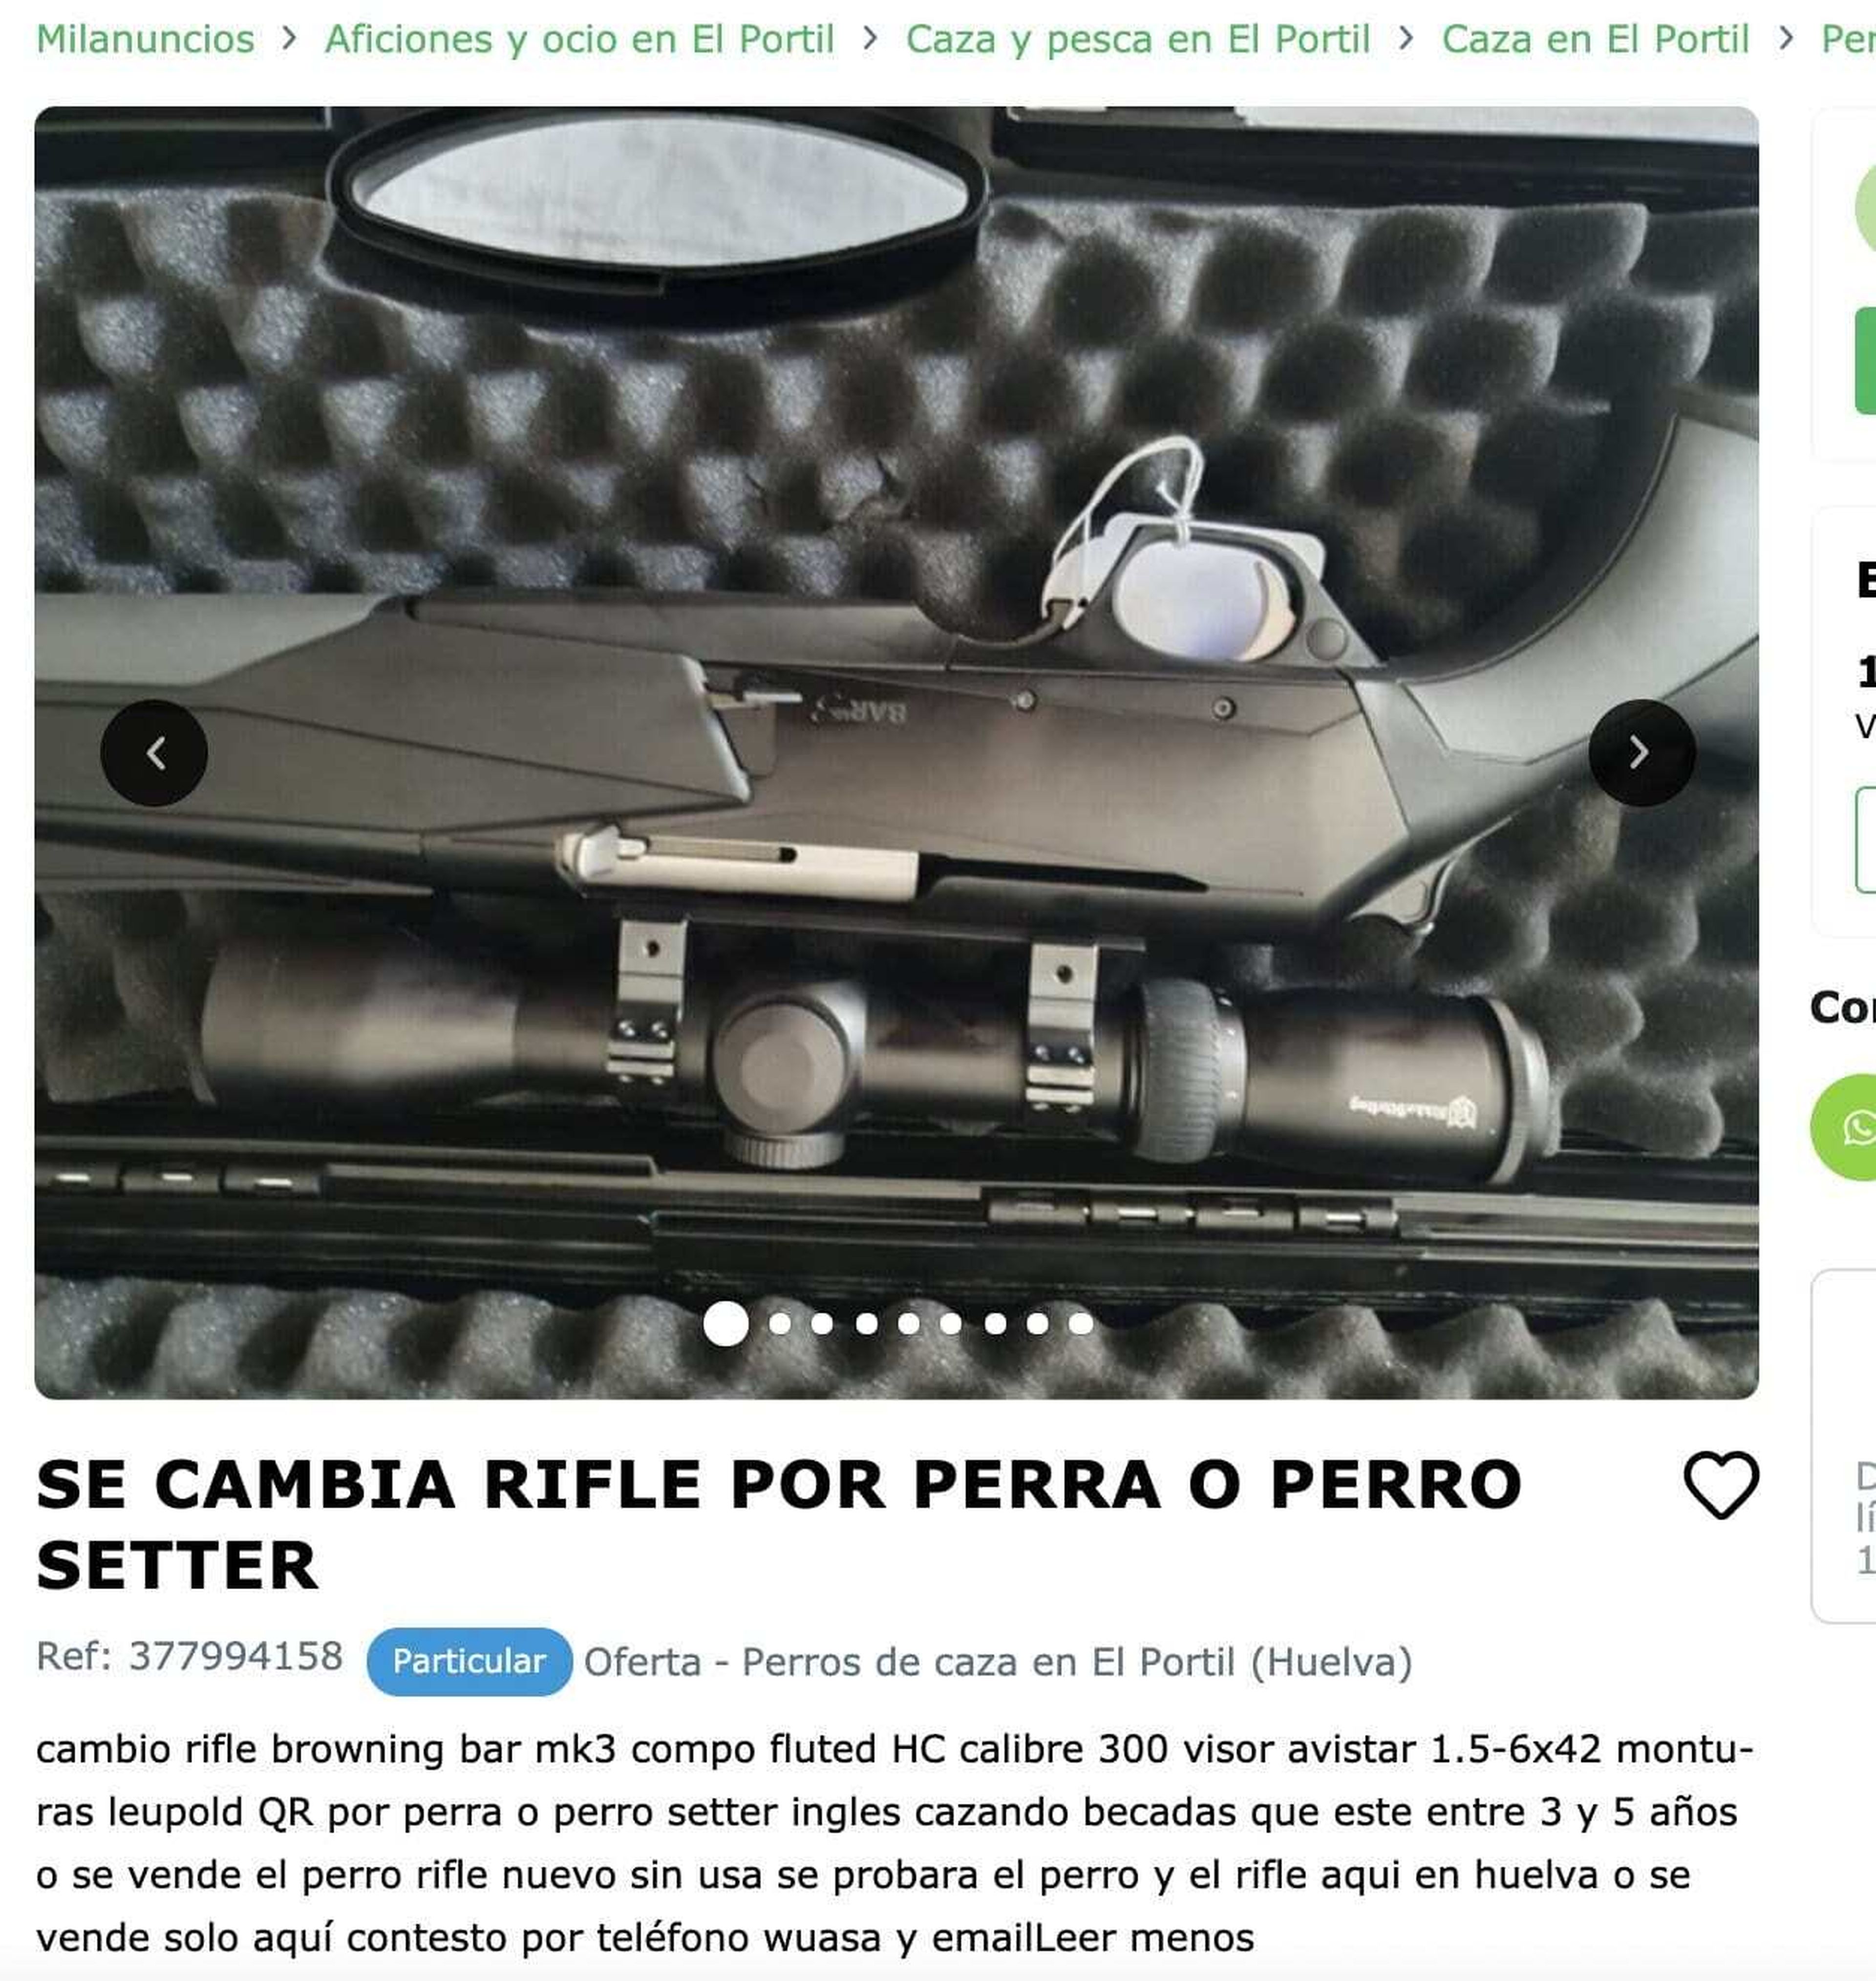 Imagen del anuncio en el que se ofrecía un rifle a cambio de un perro.